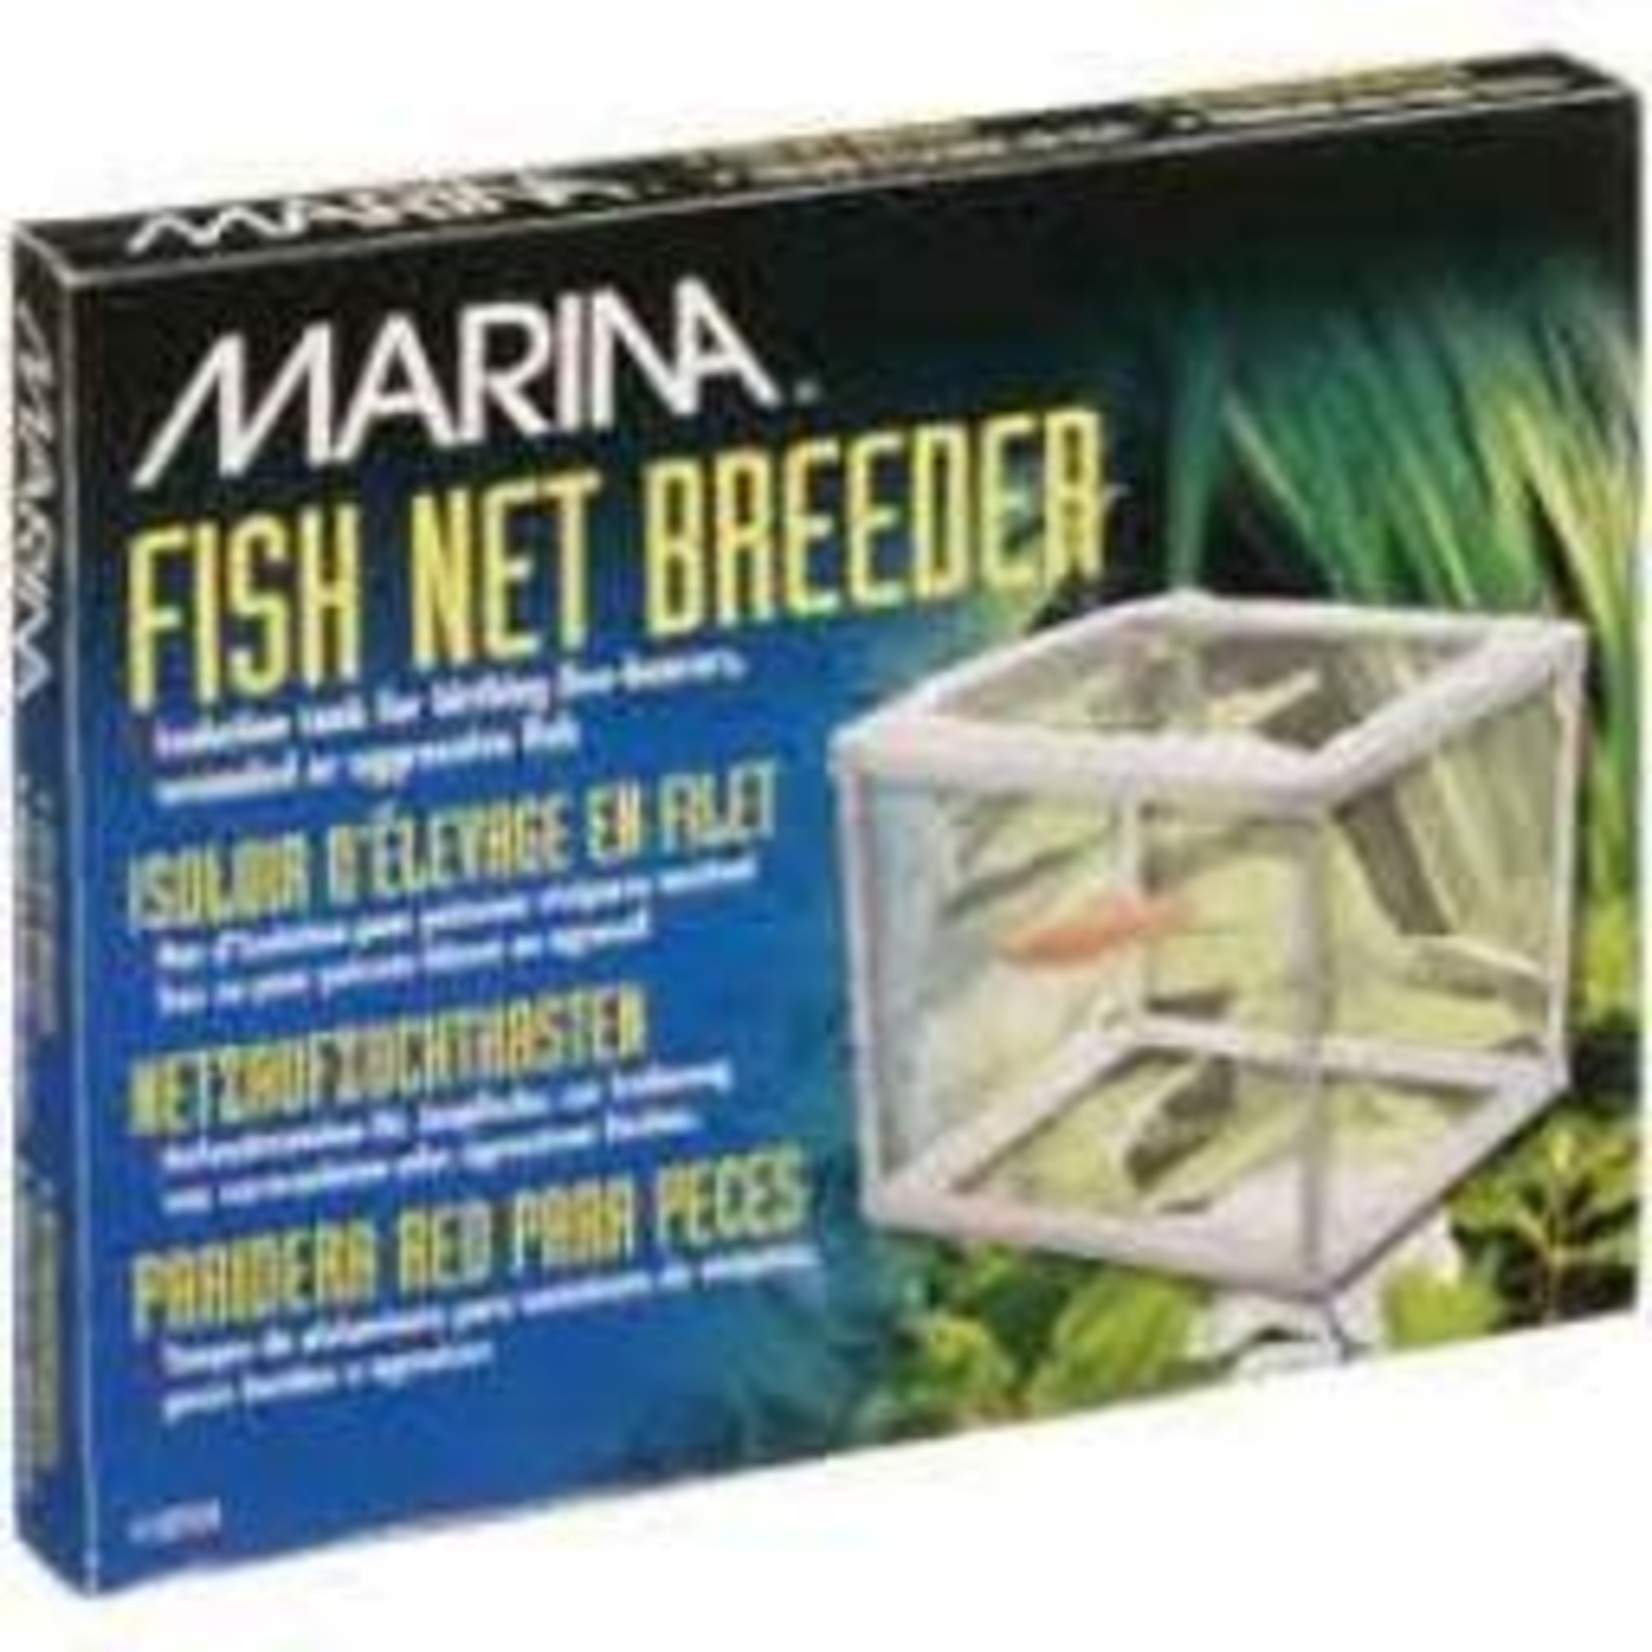 MARINA Marina Fish Net Breeder